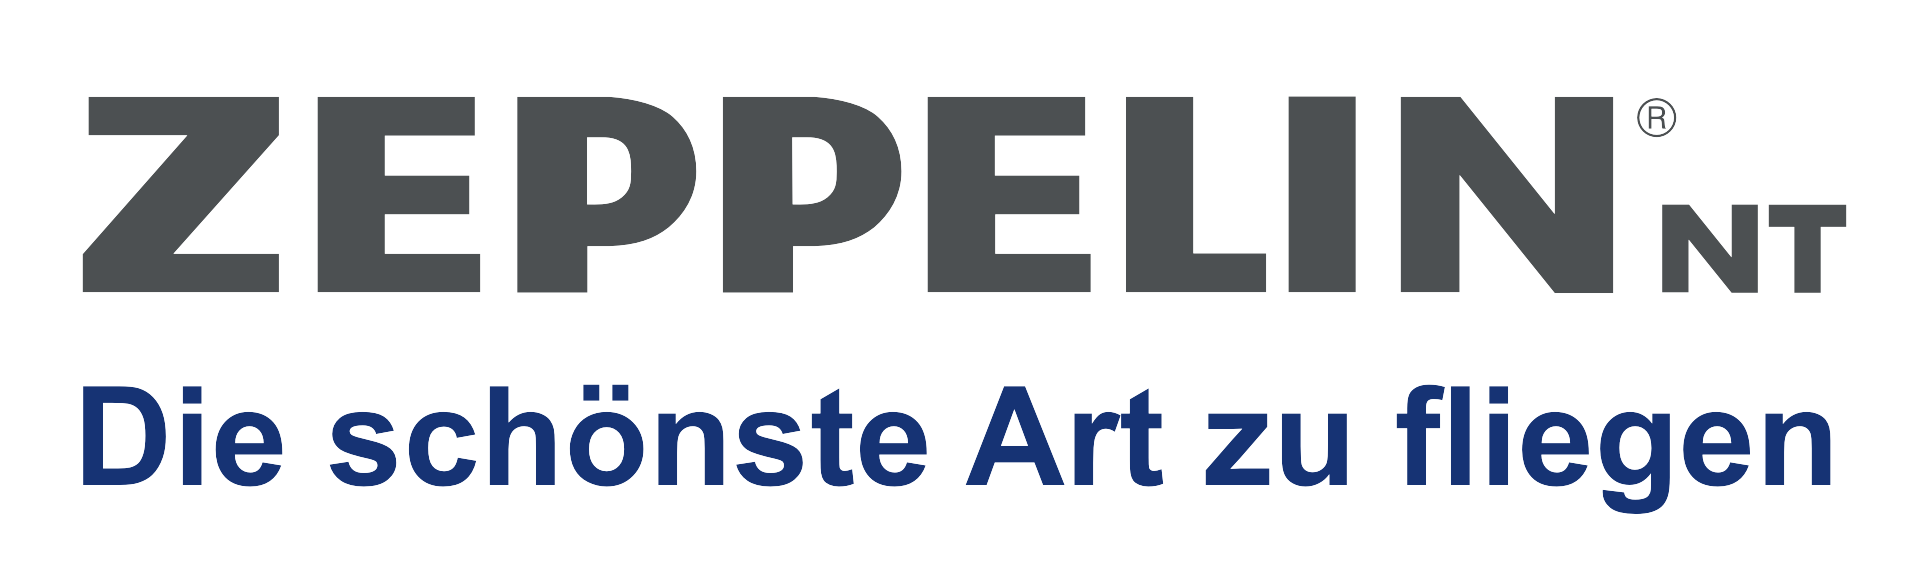 offizieller Buchungspartner Zeppelin Reederei 